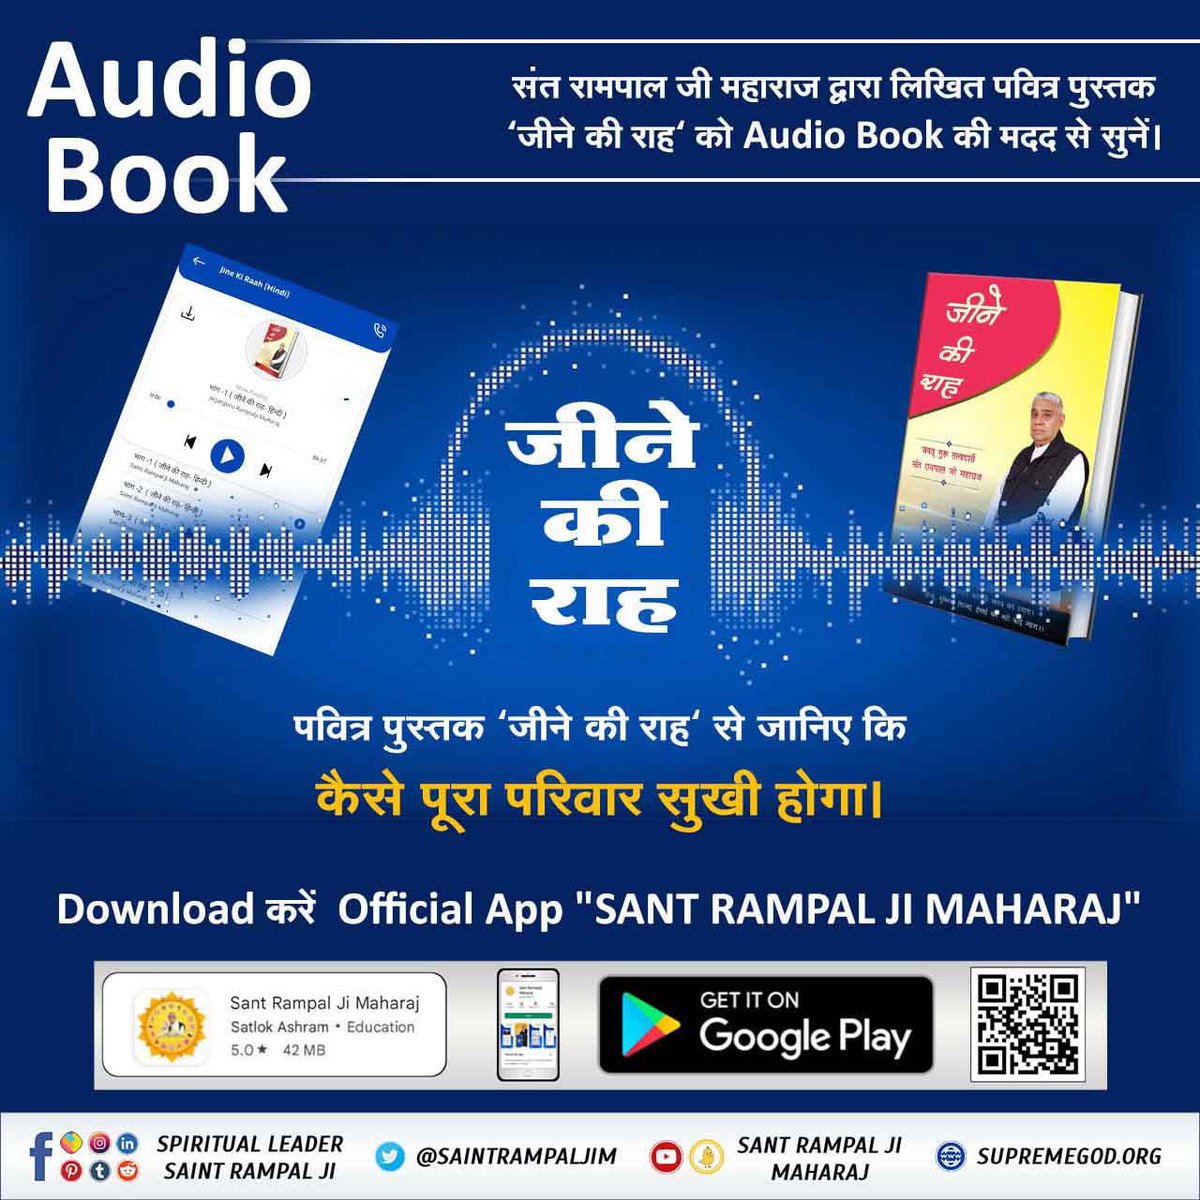 पवित्र पुस्तक 'जीने की राह' से जानिए कि कैसे उजड़े परिवार फिर से बस जाऐंगे।
Audio Book सुनने के लिए Download करें Official App 'SANT RAMPAL JI MAHARAJ'